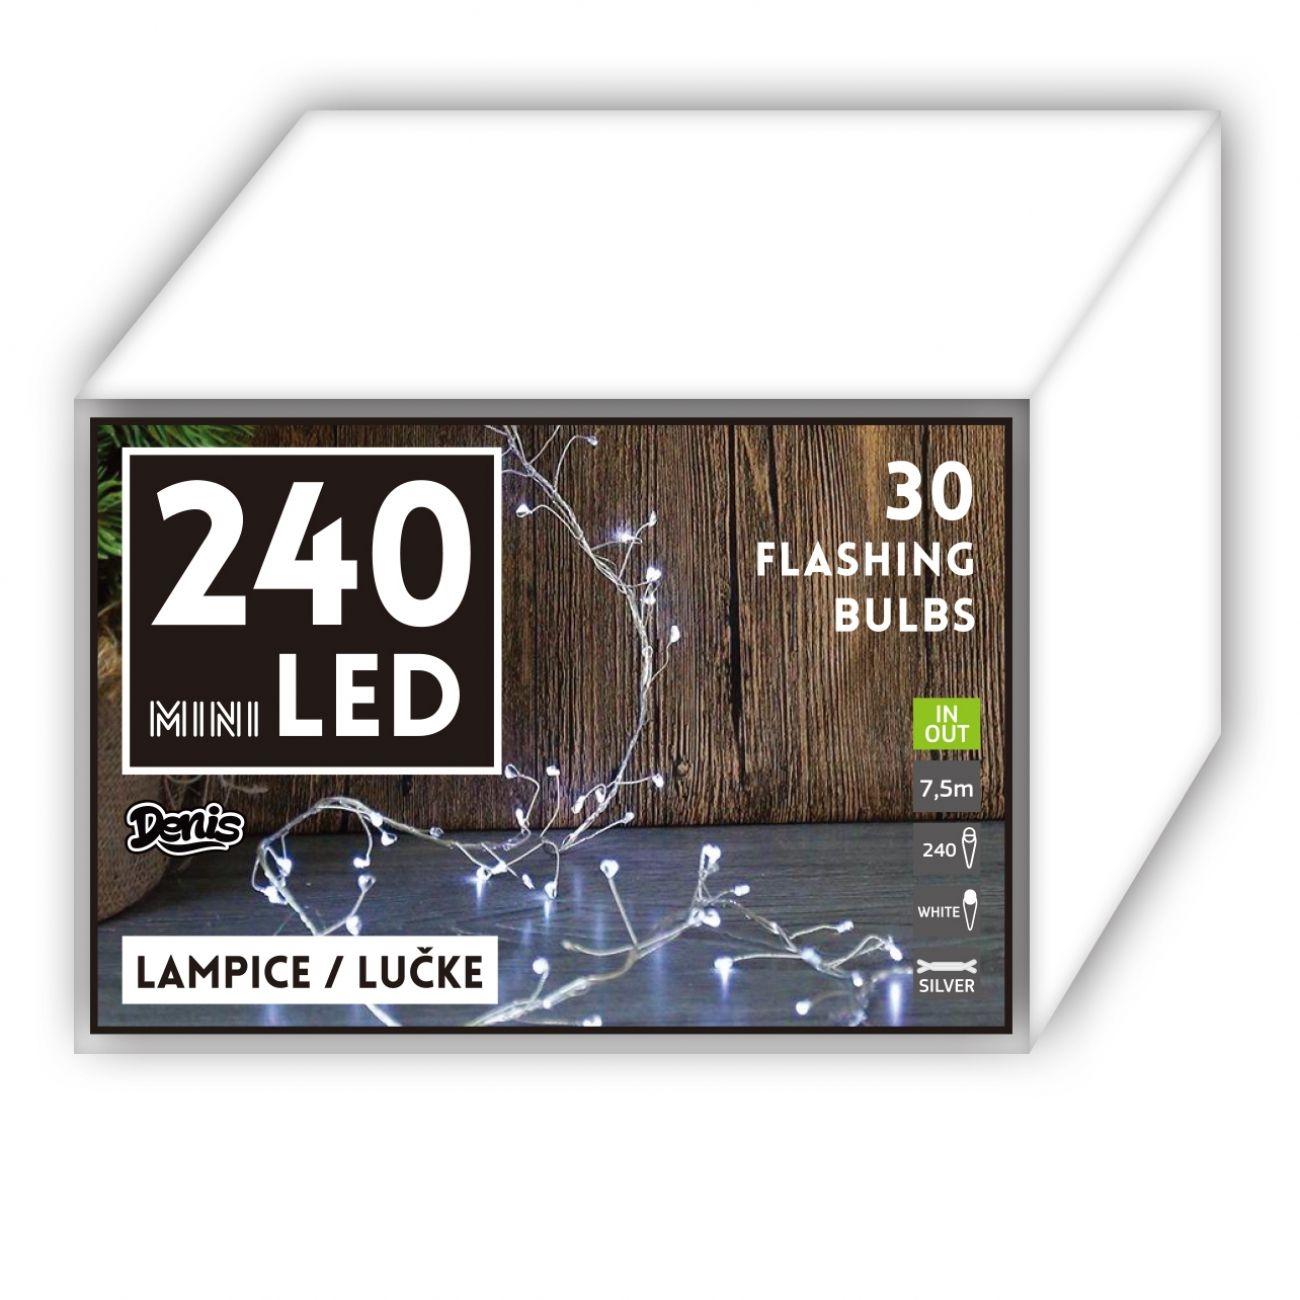 DENIS Mini LED lampice 240L 30 flash